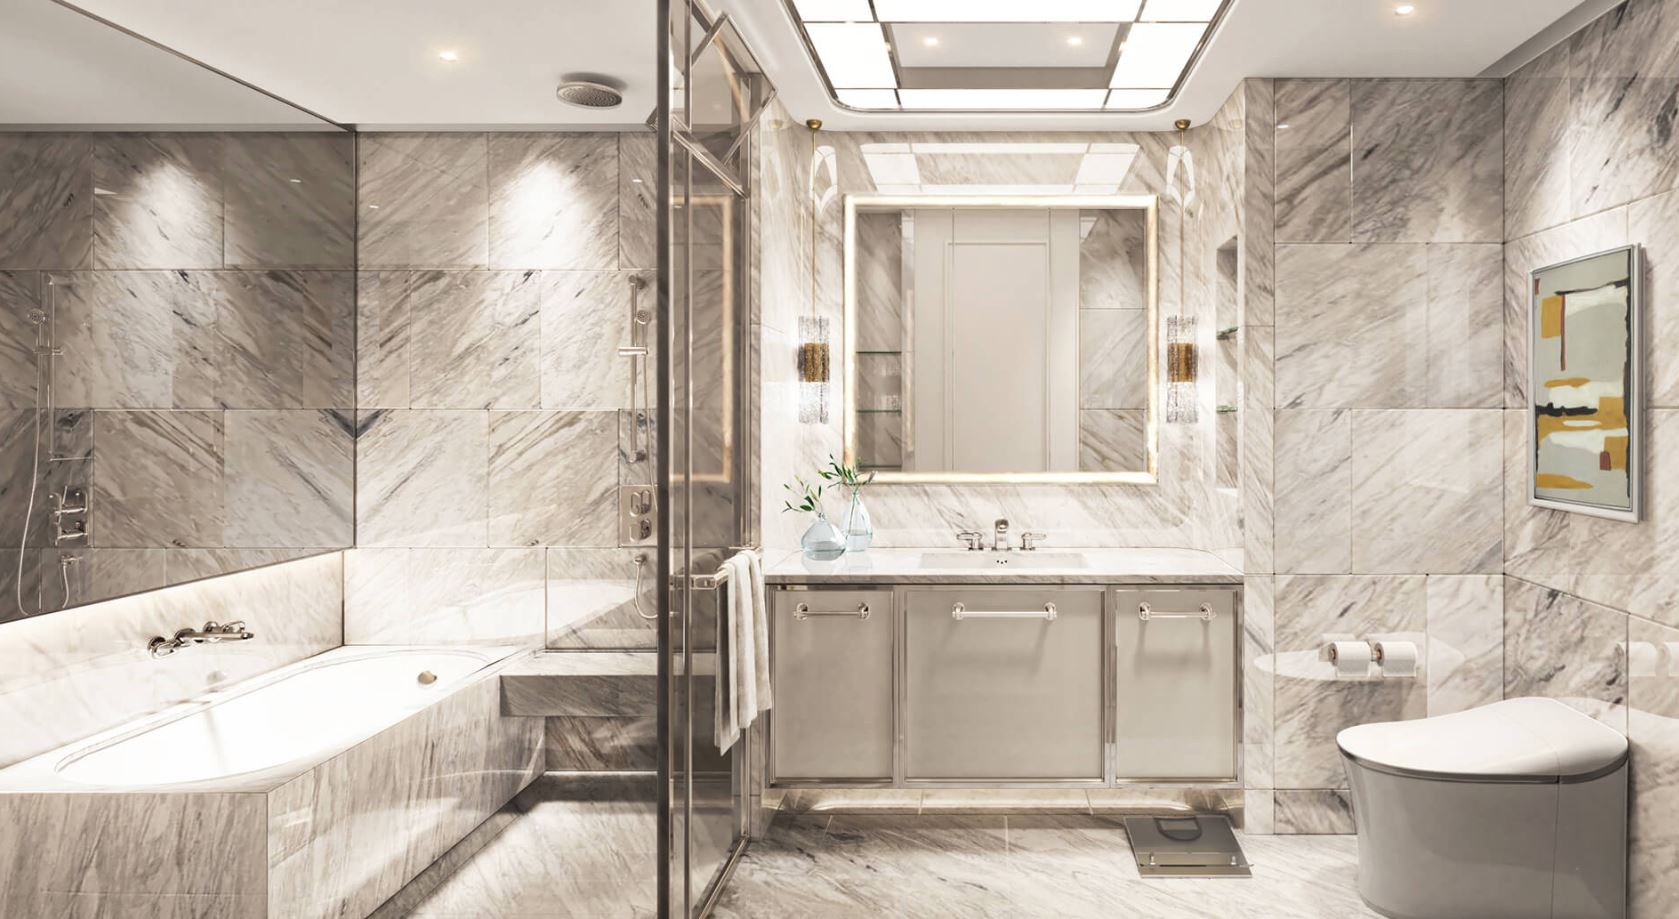 Phòng tắm và nhà vệ sinh của Grand Marina Tôn Đức Thắng được thiết kế theo tiêu chuẩn Marriott 